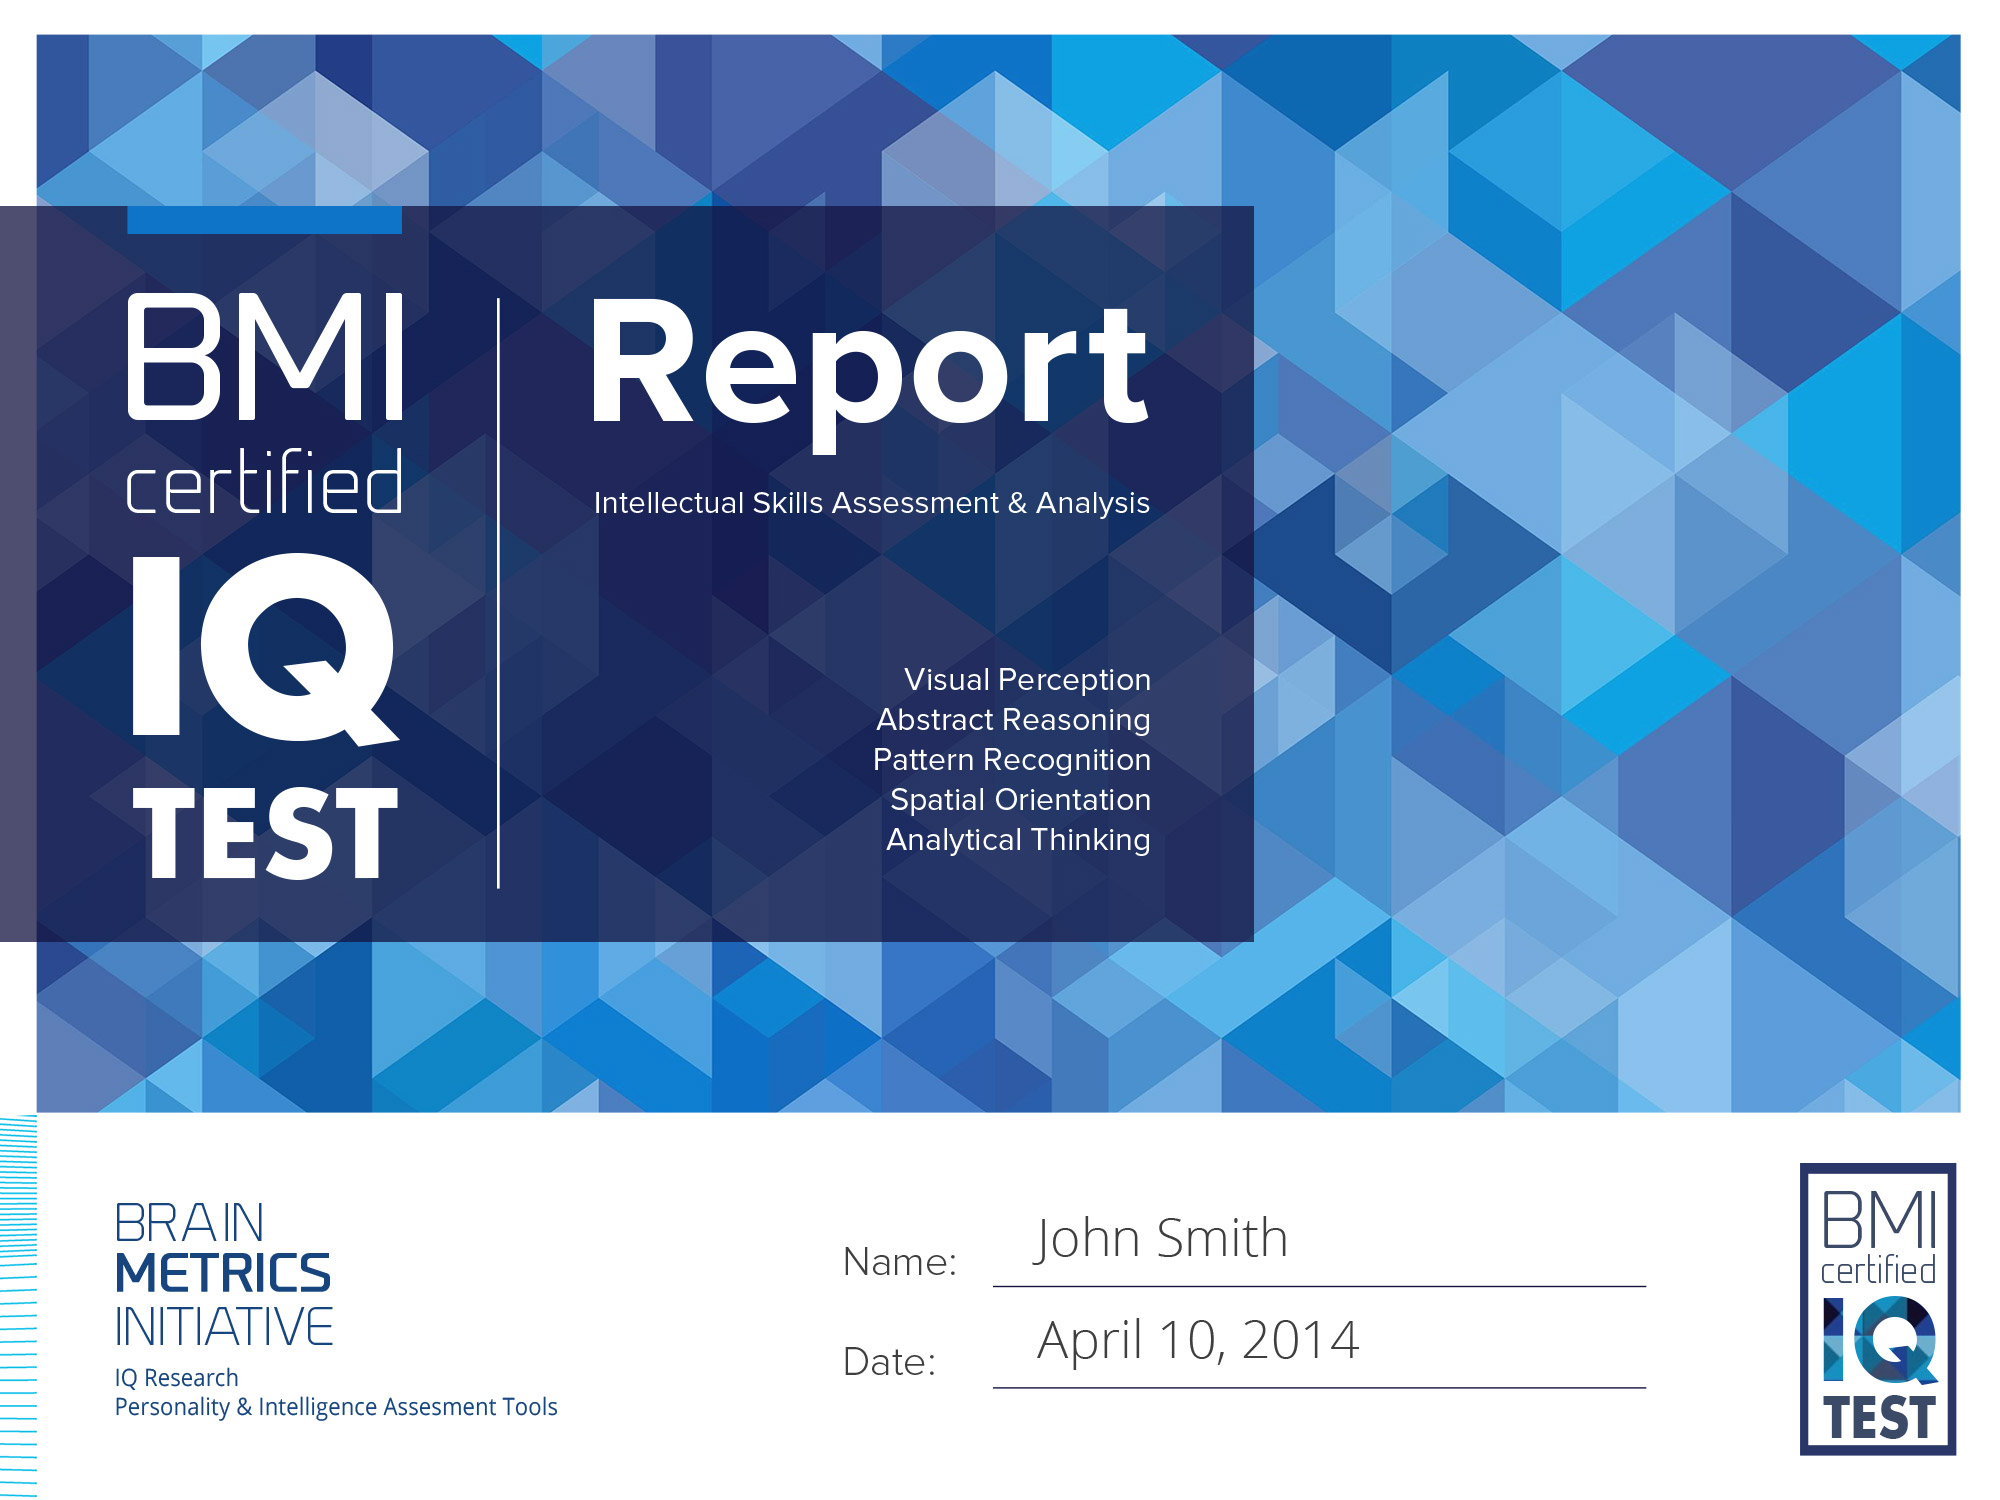 Sample BMI Report